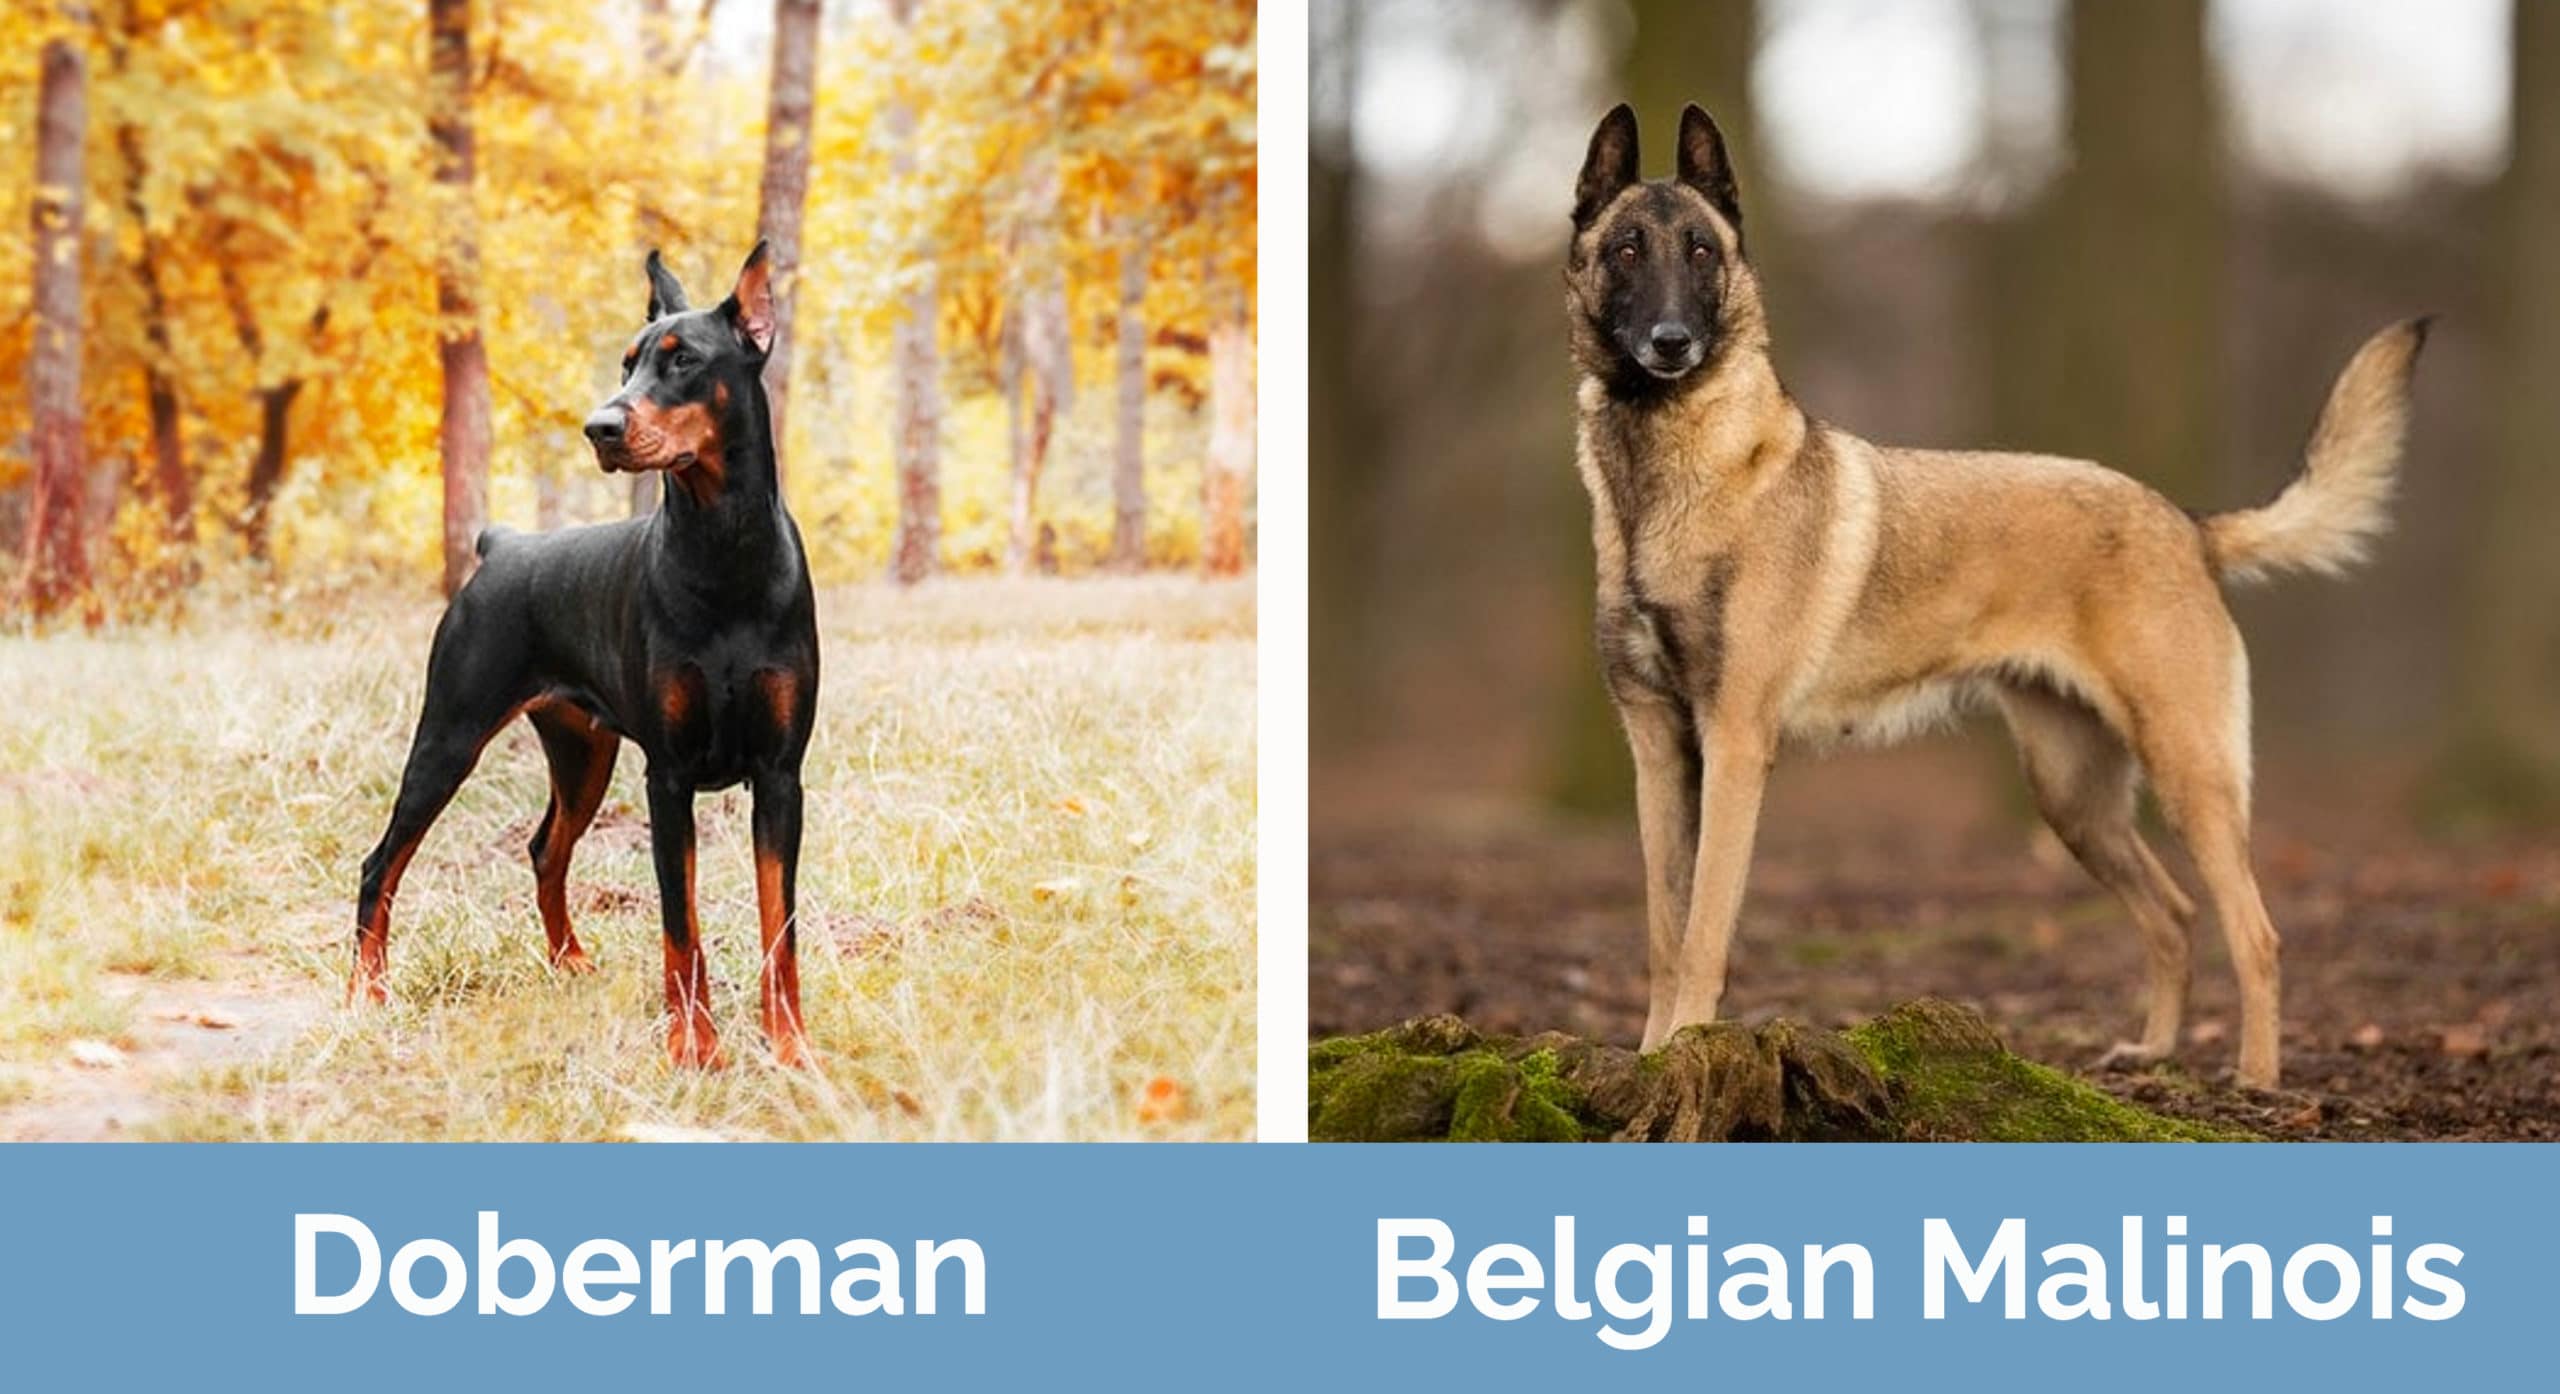 Doberman & Belgian Malinois side by side